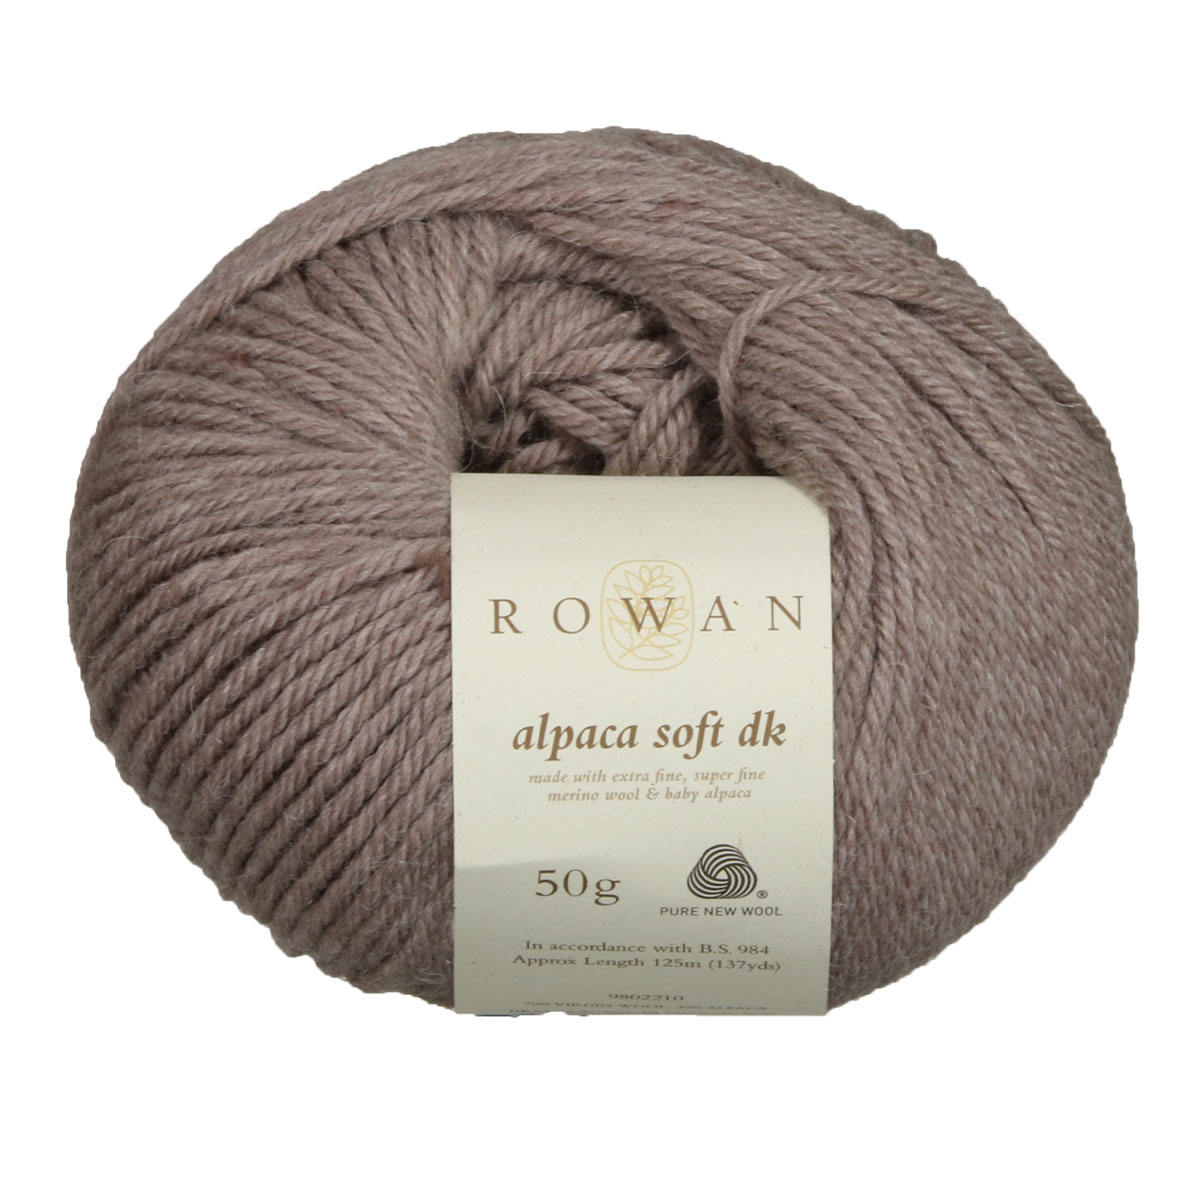 Rowan Alpaca Soft dk